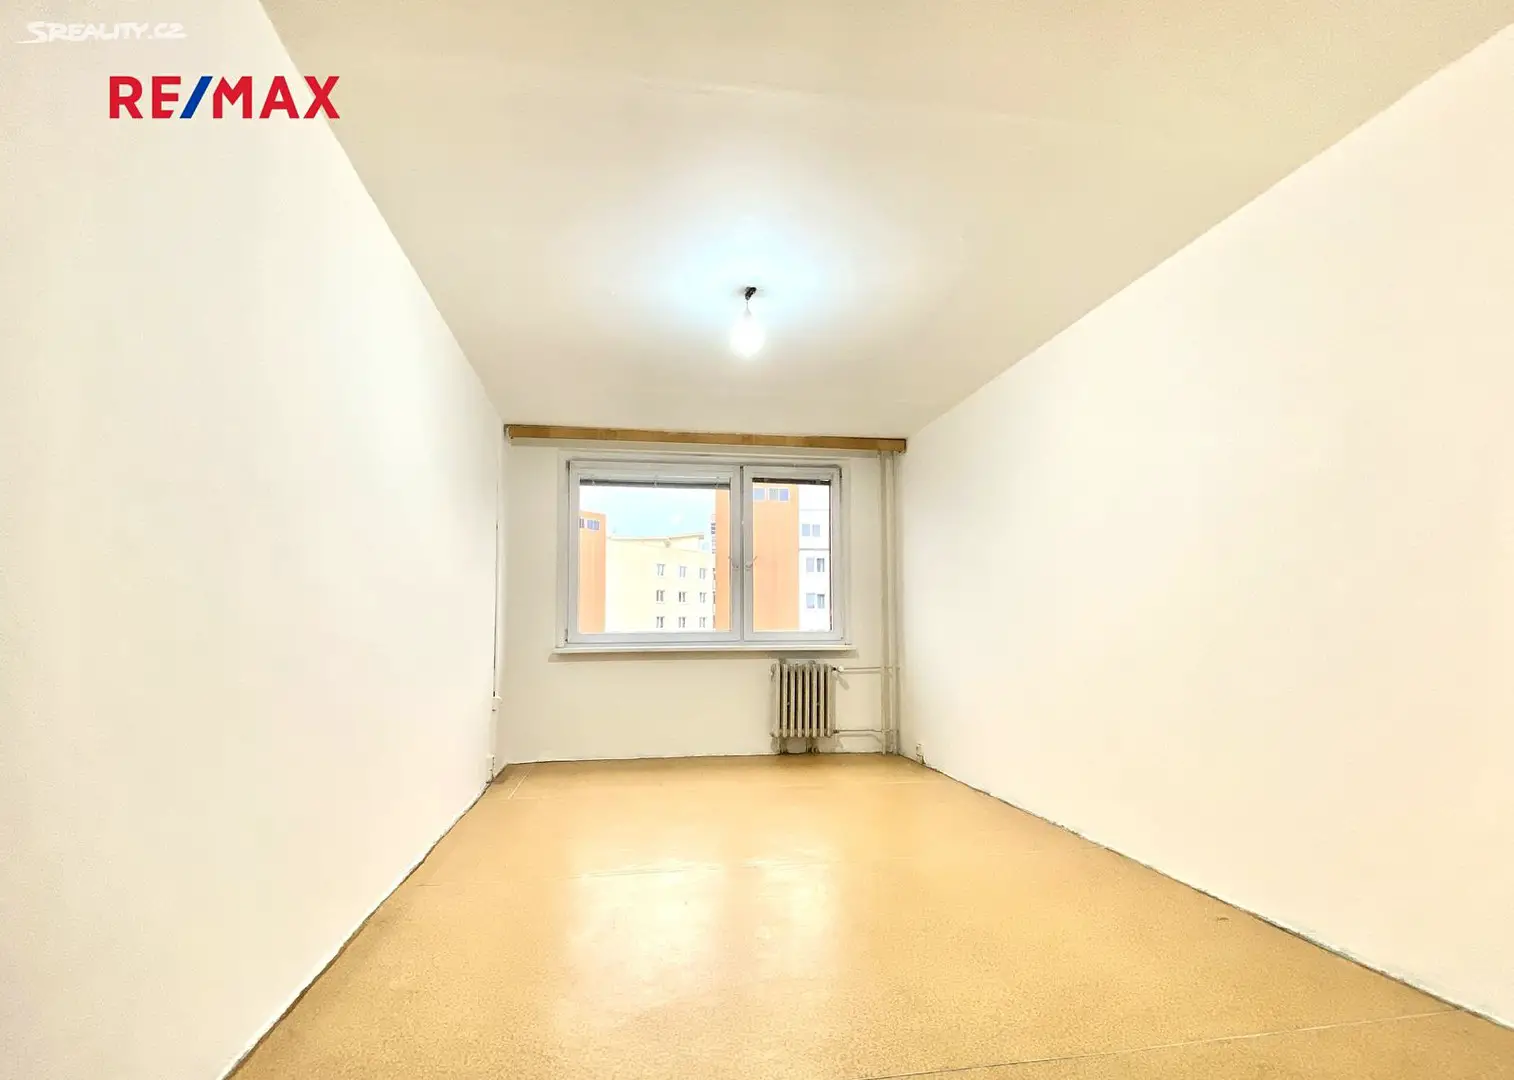 Prodej bytu 2+kk 45 m², Veronské nám., Praha 10 - Horní Měcholupy